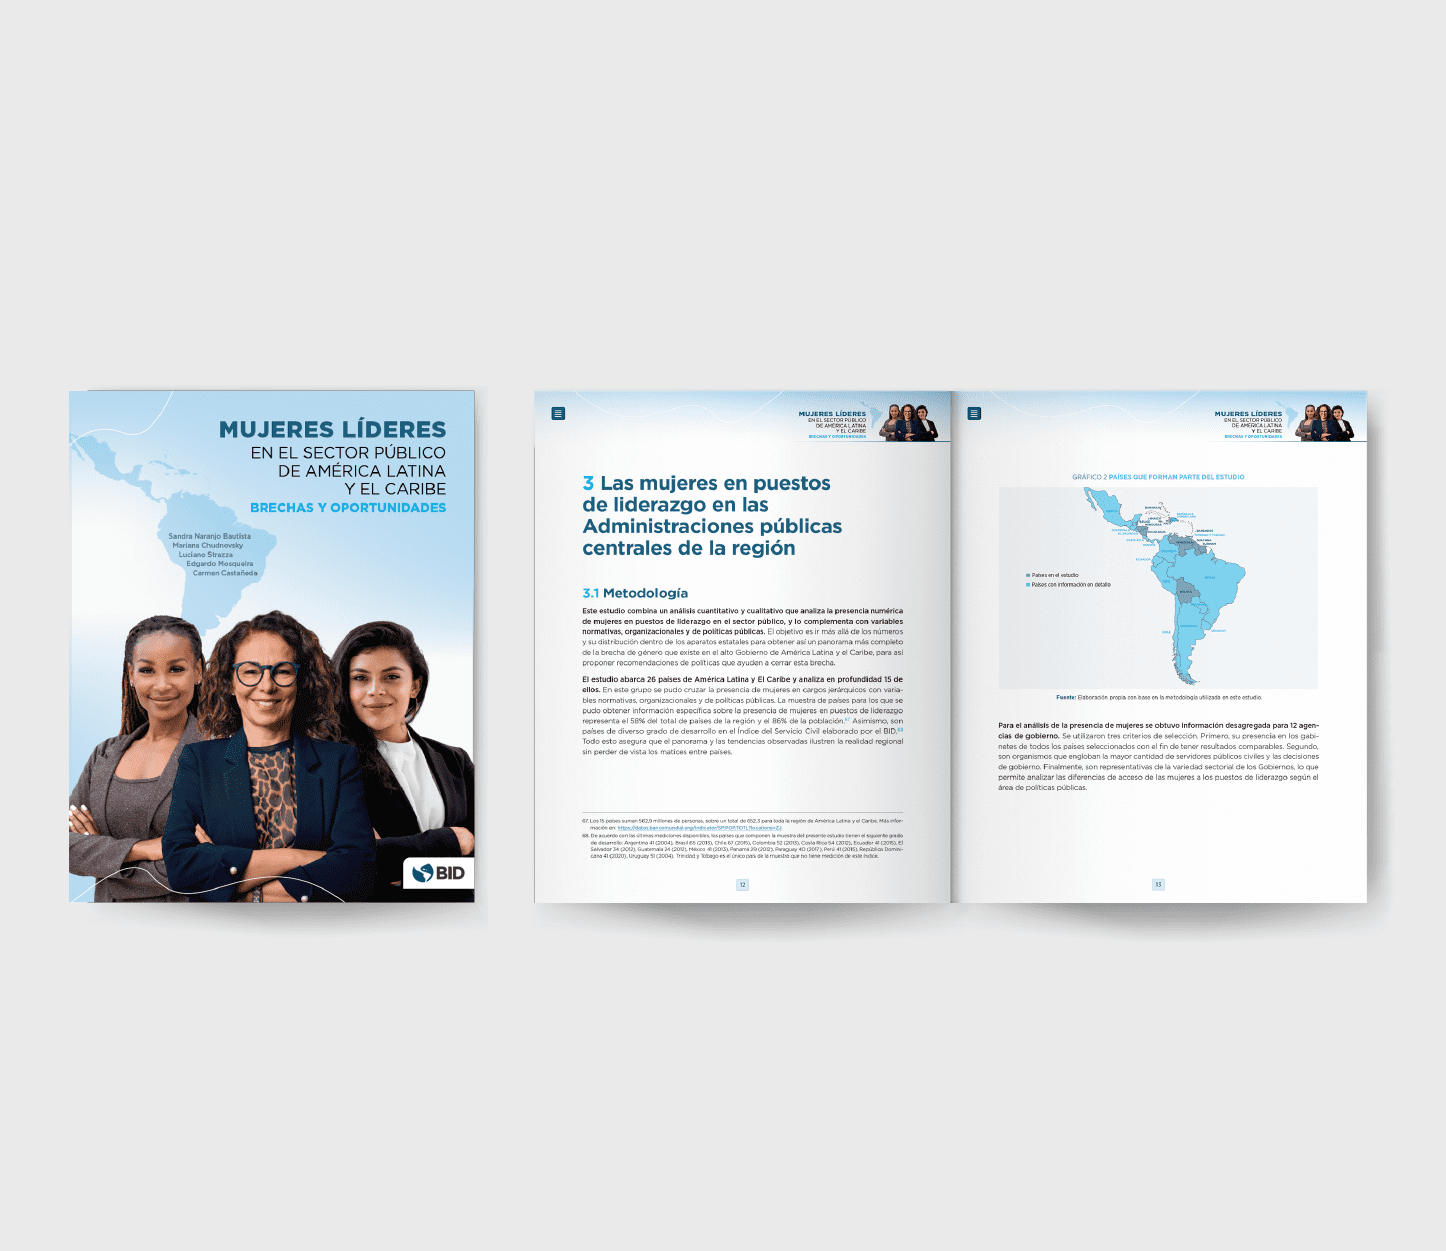 Mujeres líderes en el sector público de América Latina y el Caribe: brechas y oportunidades (2022)